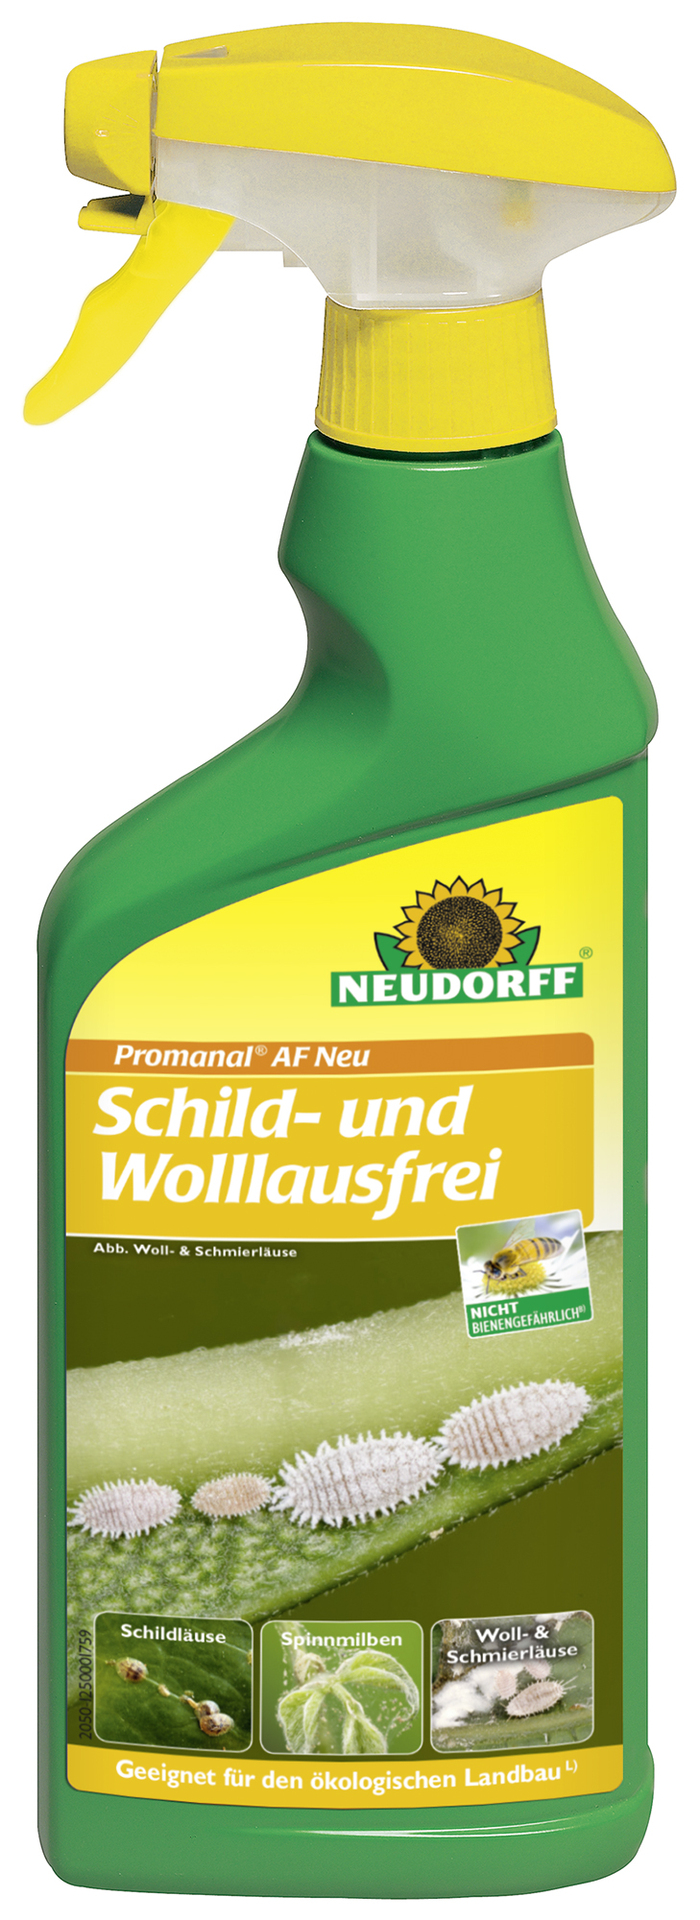 W. Neudorff GmbH KG Promanal AF Neu Schild- und Wollausfrei